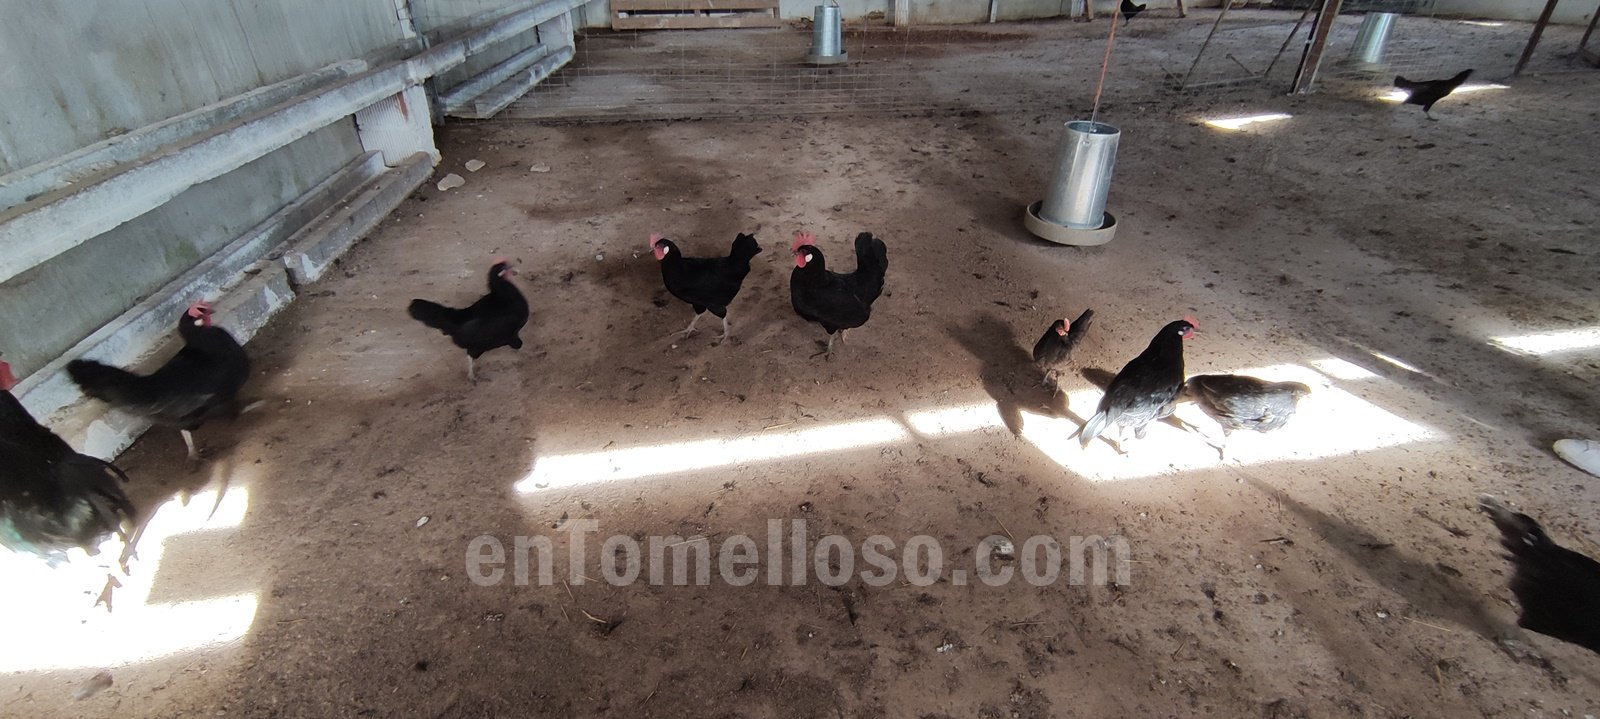 "La Barja" un proyecto de avicultura ecológica y de calidad en Tomelloso